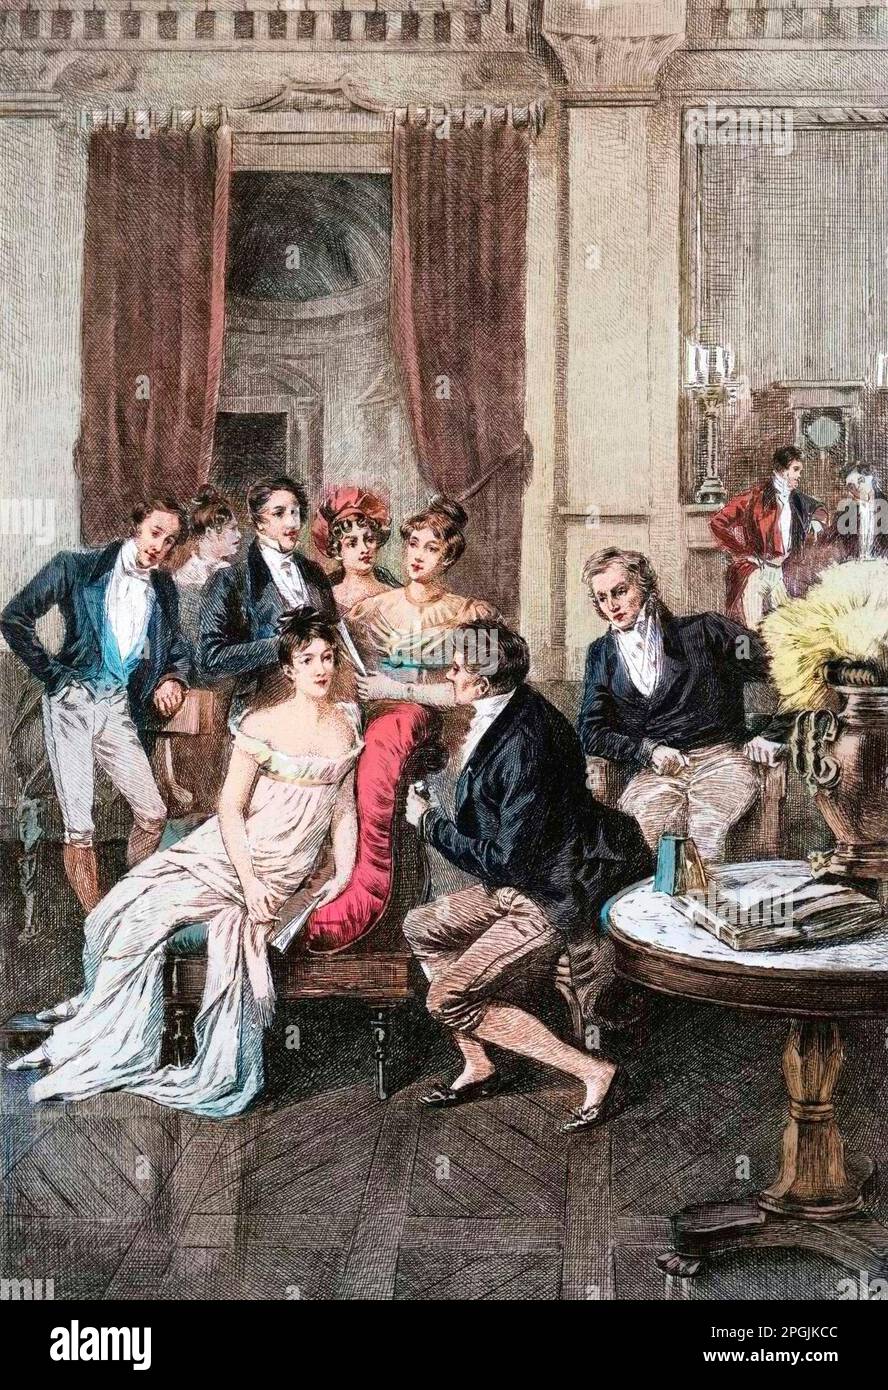 Le salon de Madame de Recamier - salon littéraire : 'Autour de madame Recamier' Madame Juliette Recamier (1777-1849) entrée par les personnages litteraires et politiques : Charles Nodier (1780-1844), François René vicomte de Châteaubriand (1768-1848), Sophie gay (1776-1852), Mme Necmaker (1767-1830), Mme Benjamin (1792-1875), Mme Ancelot (-) baronne de Stael-Holstein dite Madame de Stael (1766-1817), André Marie Ampere (1775-1836). 19eme siecle Banque D'Images